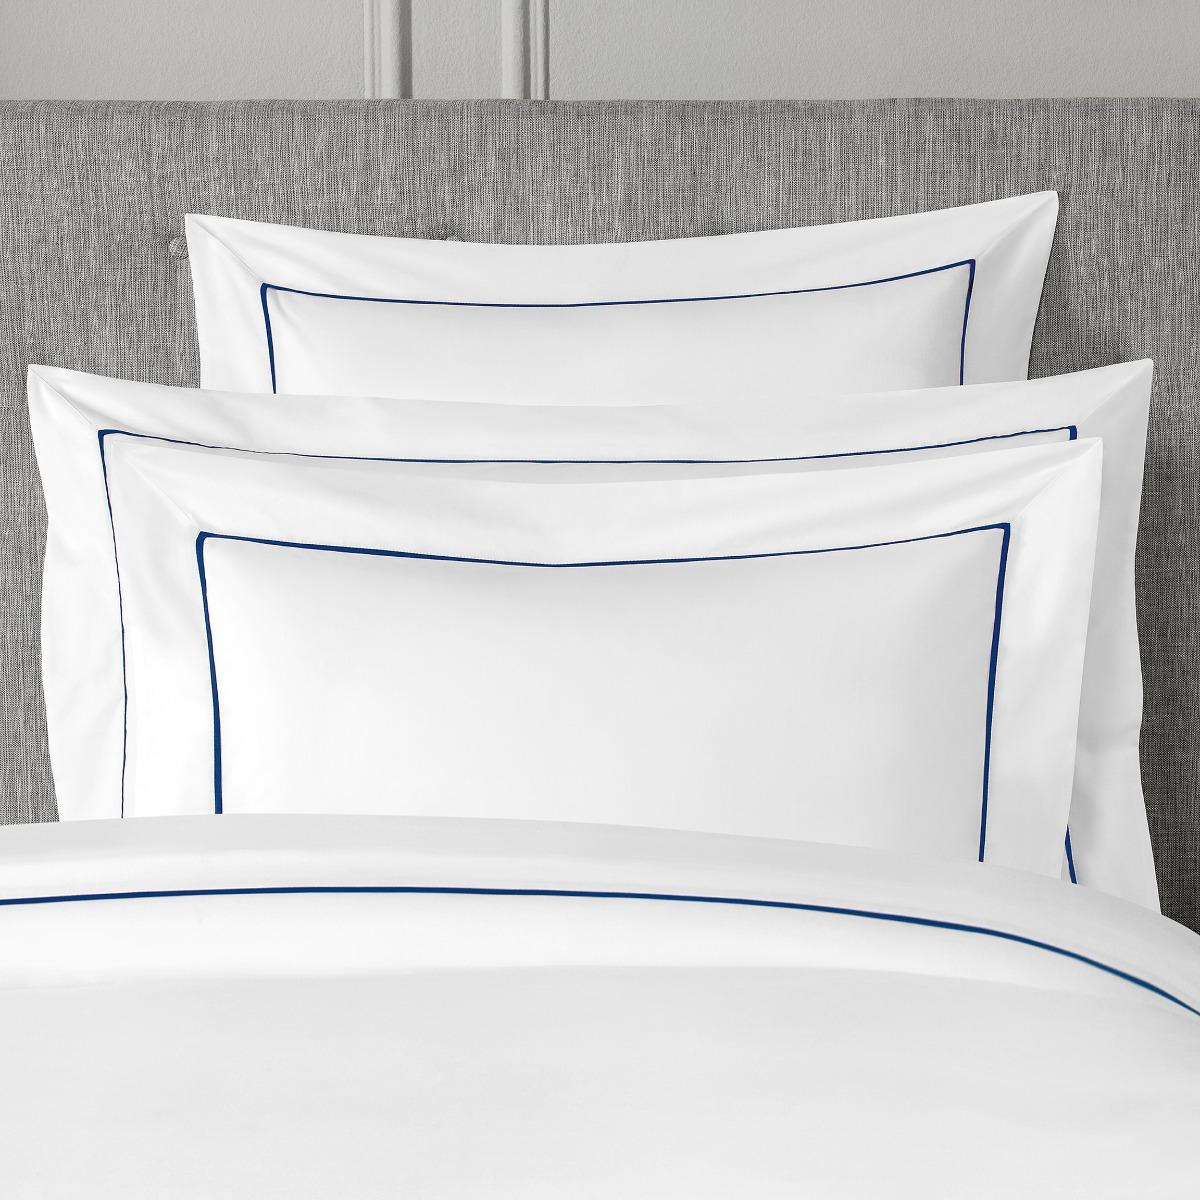 комплект наволочек estia hotel collection белых 70х70 см Комплект наволочек Togas Плаза белый с тёмно-синим 70х70 см